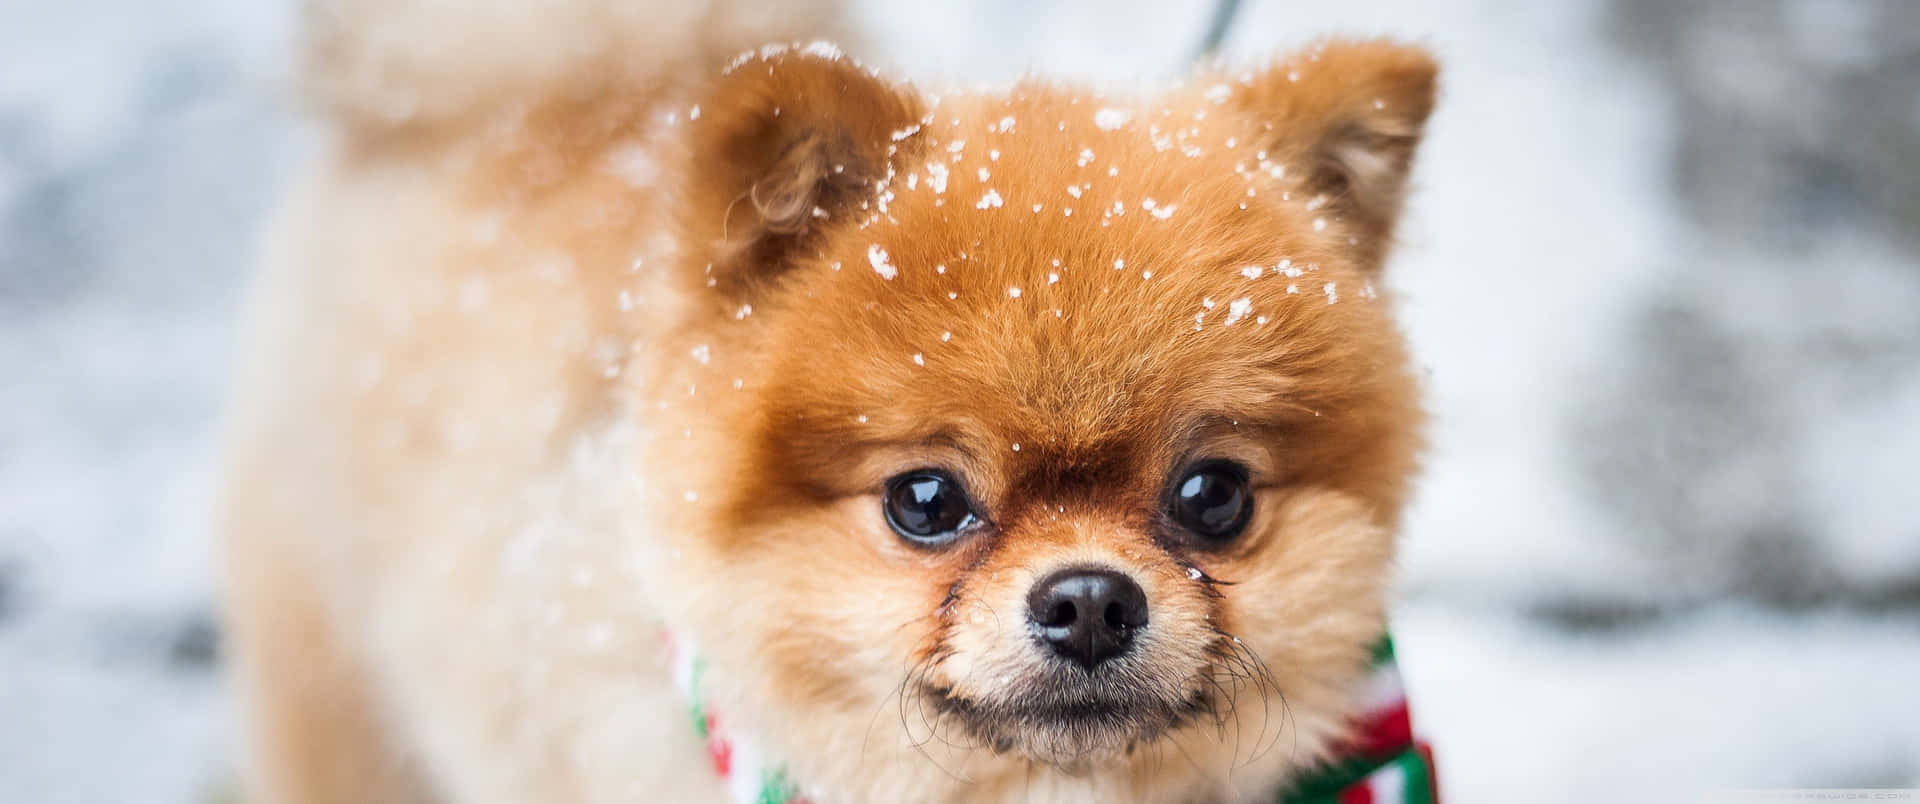 Unlindo Perro Disfruta De La Nieve Invernal Fondo de pantalla